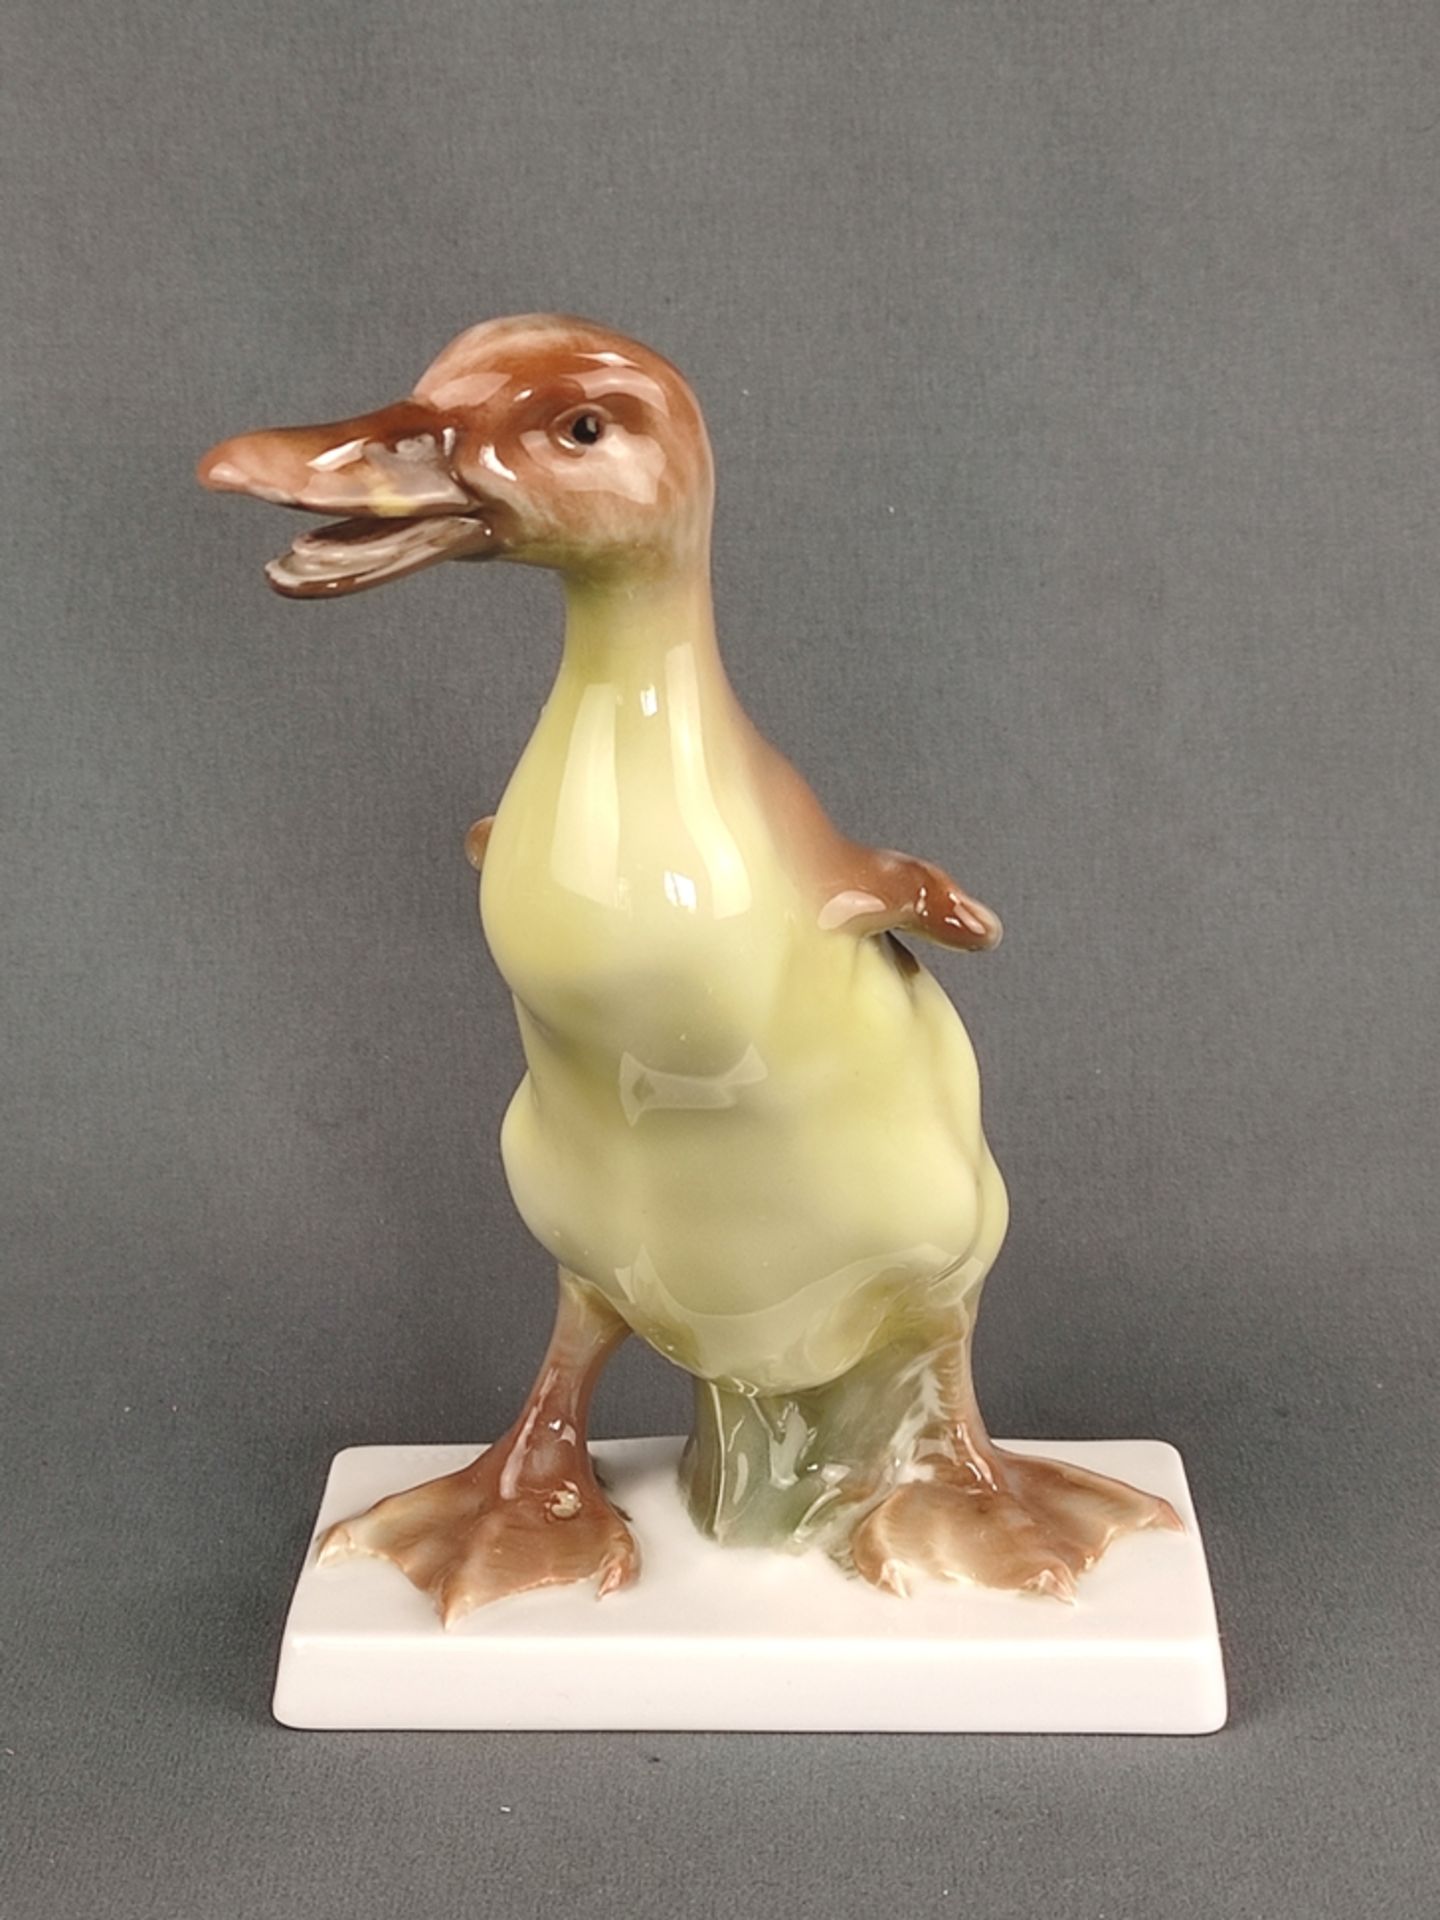 Schnatternde Ente "Protest", Rosenthal, Entwurf Karl Himmelstoss, auf Basis signiert, Höhe 19cm - Bild 2 aus 7